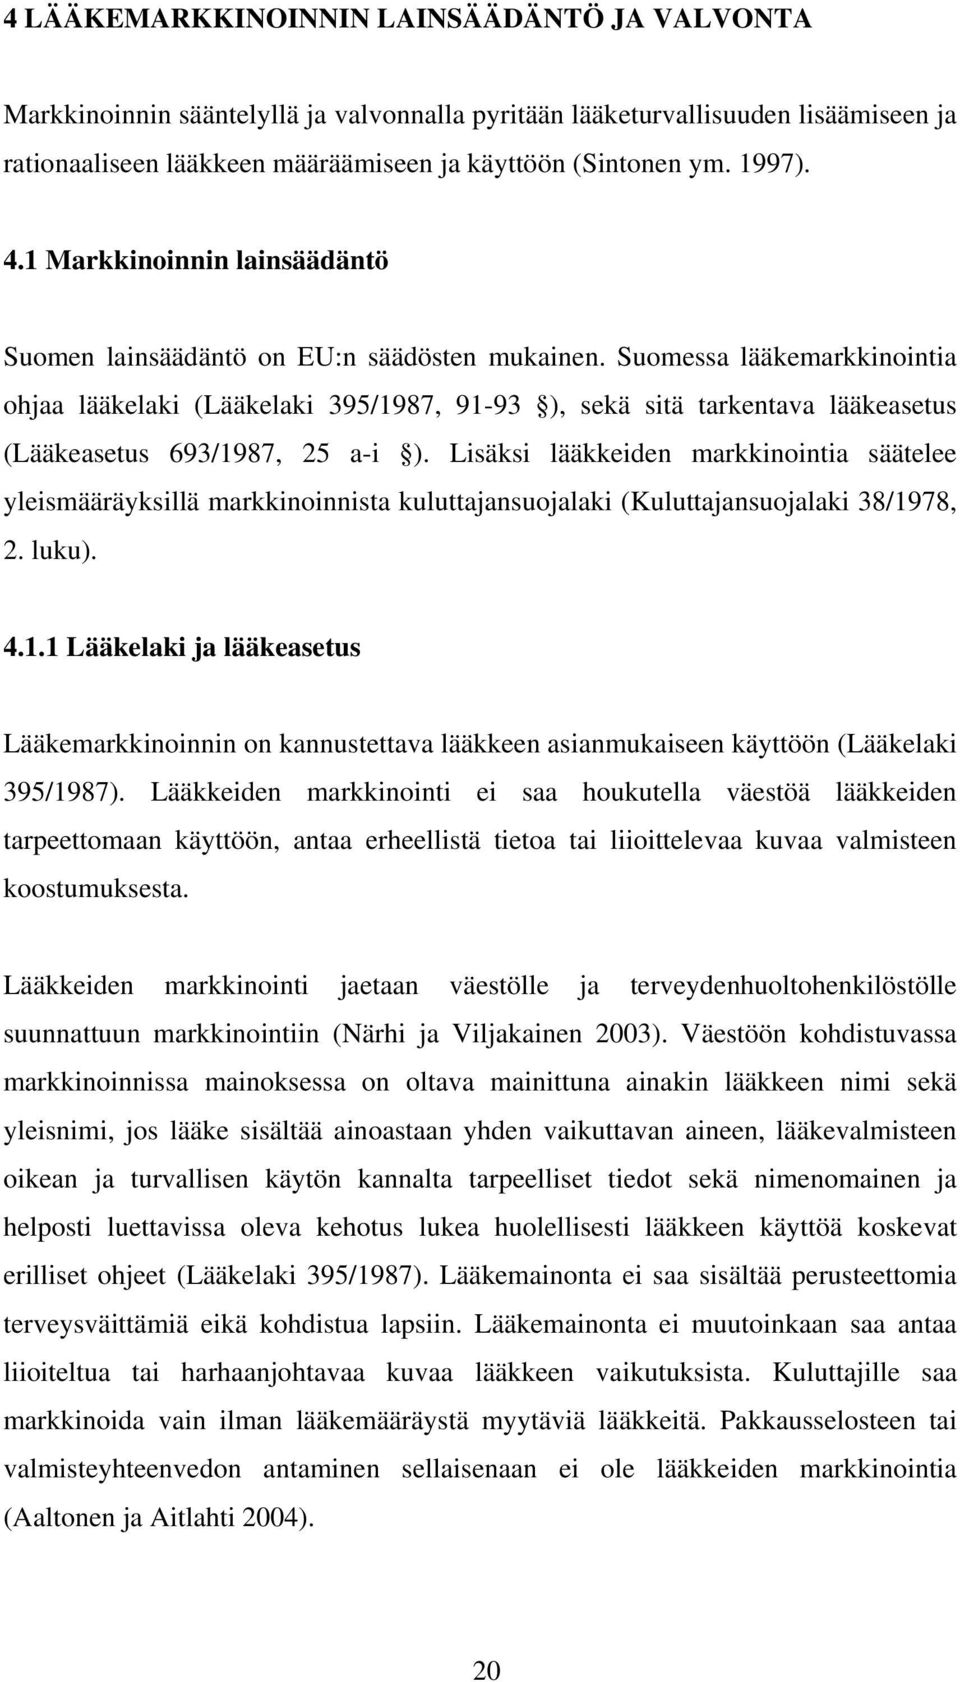 Suomessa lääkemarkkinointia ohjaa lääkelaki (Lääkelaki 395/1987, 91-93 ), sekä sitä tarkentava lääkeasetus (Lääkeasetus 693/1987, 25 a-i ).